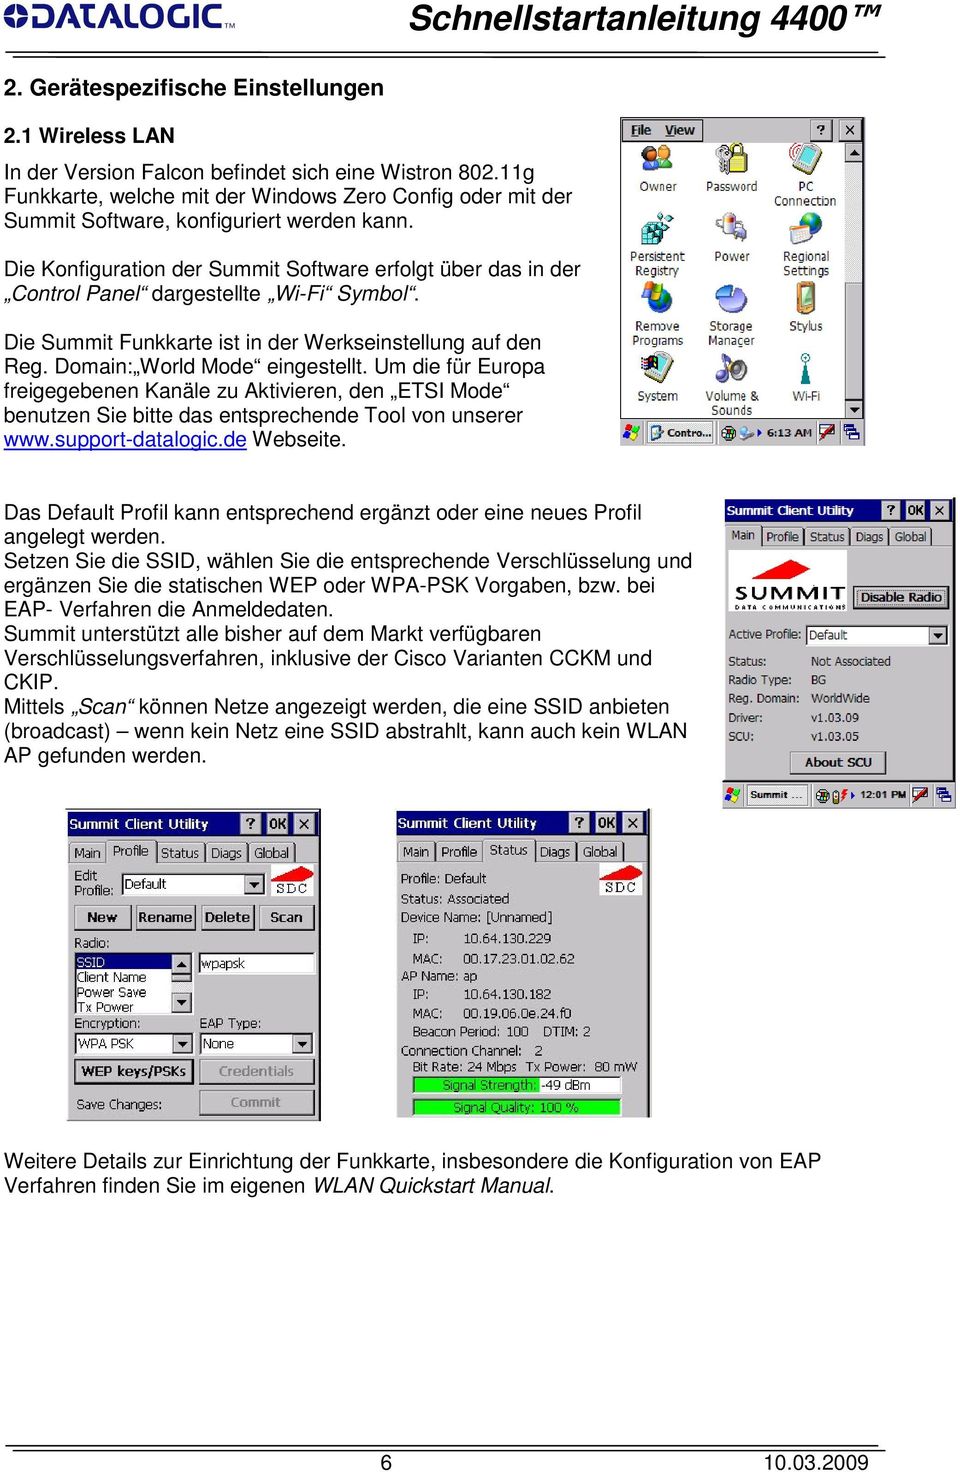 Die Konfiguration der Summit Software erfolgt über das in der Control Panel dargestellte Wi-Fi Symbol. Die Summit Funkkarte ist in der Werkseinstellung auf den Reg. Domain: World Mode eingestellt.